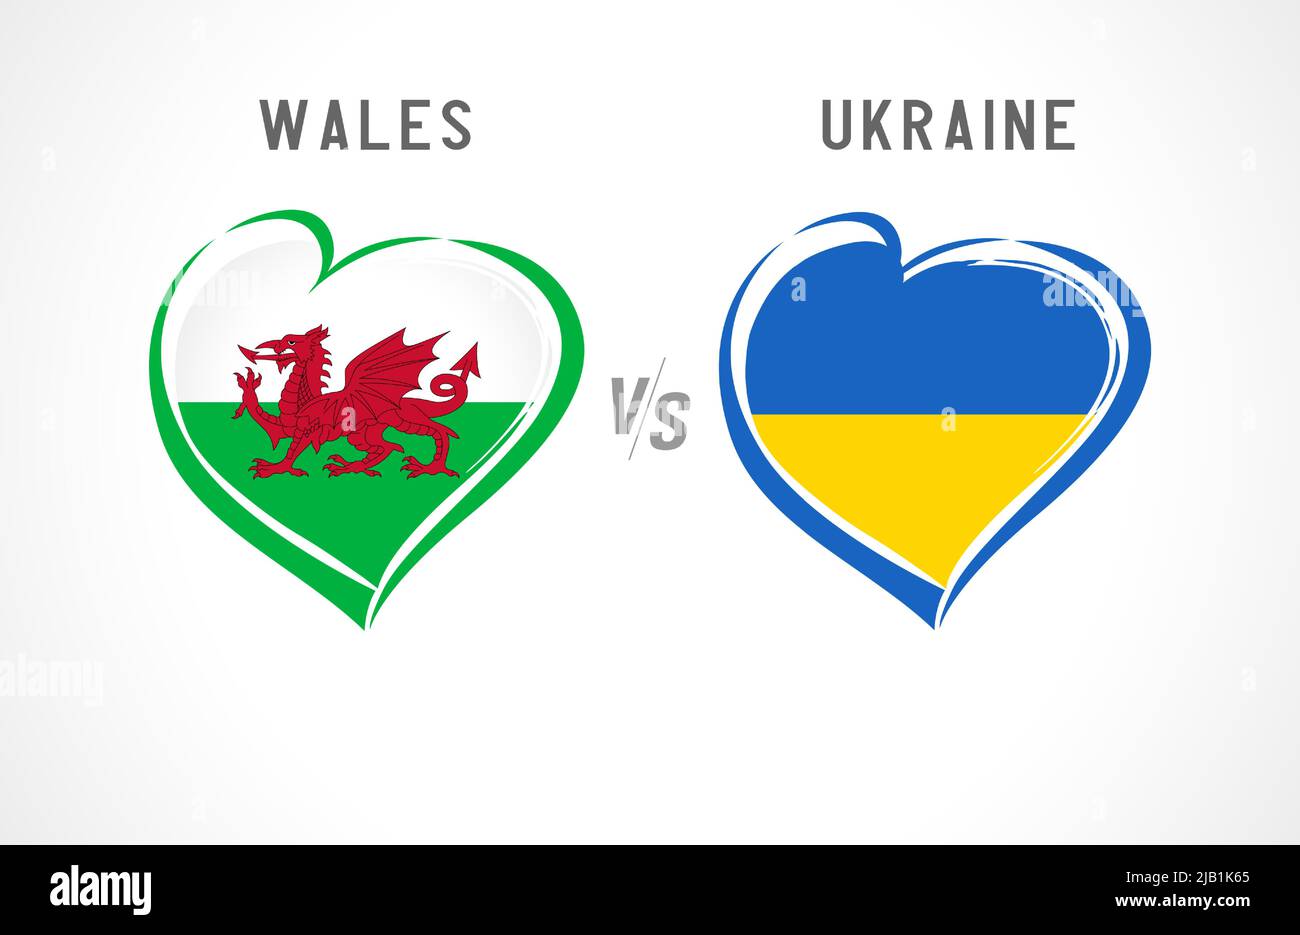 Pays de Galles contre Ukraine, emblème du drapeau. Football de l'équipe nationale sur fond blanc. Drapeau national gallois et ukrainien au coeur, illustration vectorielle Illustration de Vecteur